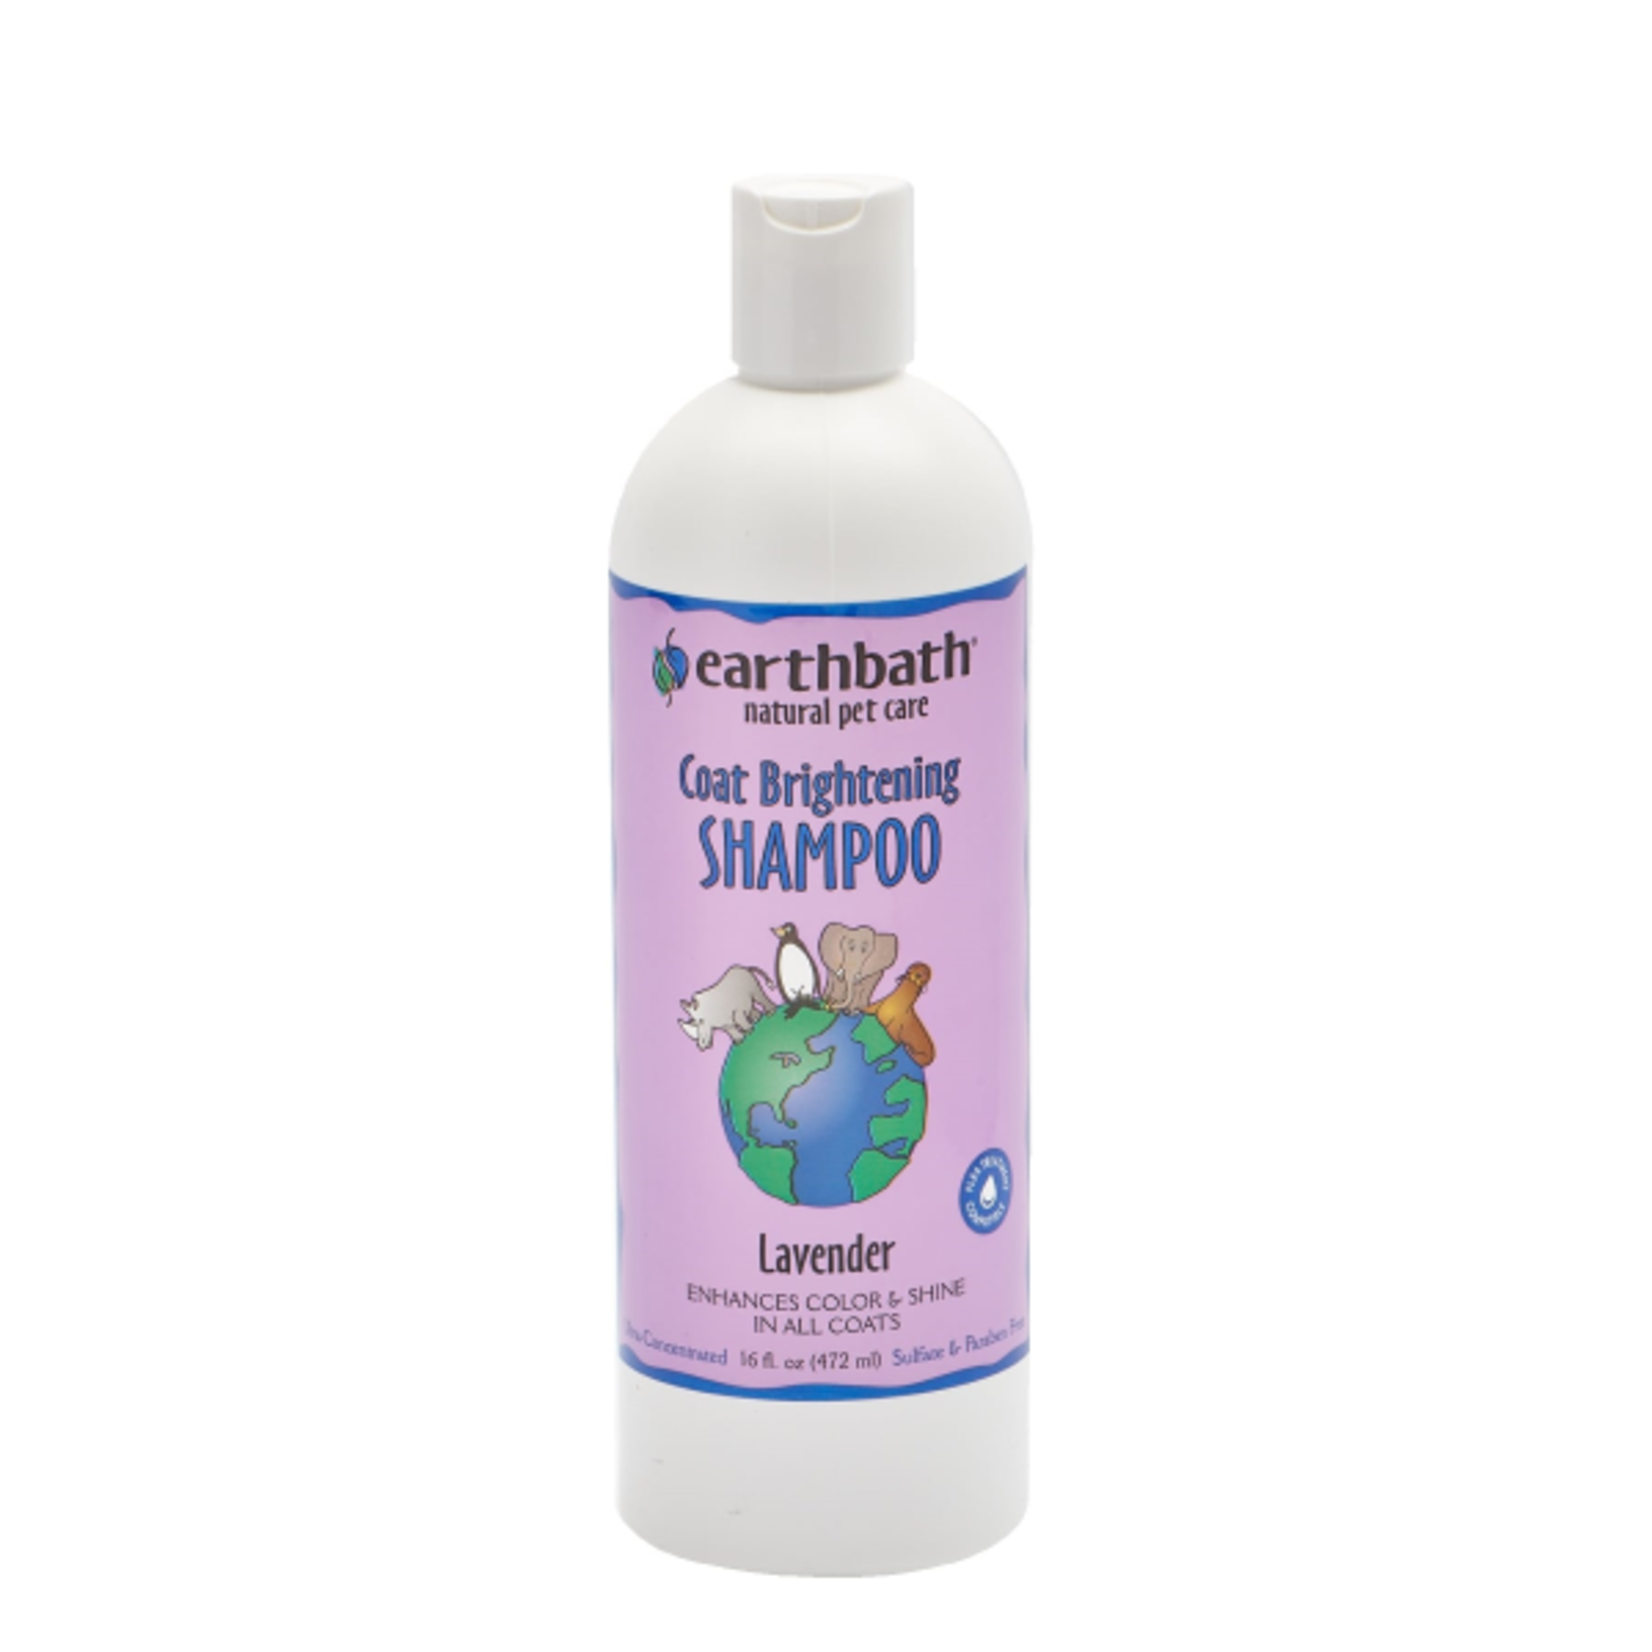 EARTH BATH earthbath Coat Brightening Shampoo Lavender 16 oz